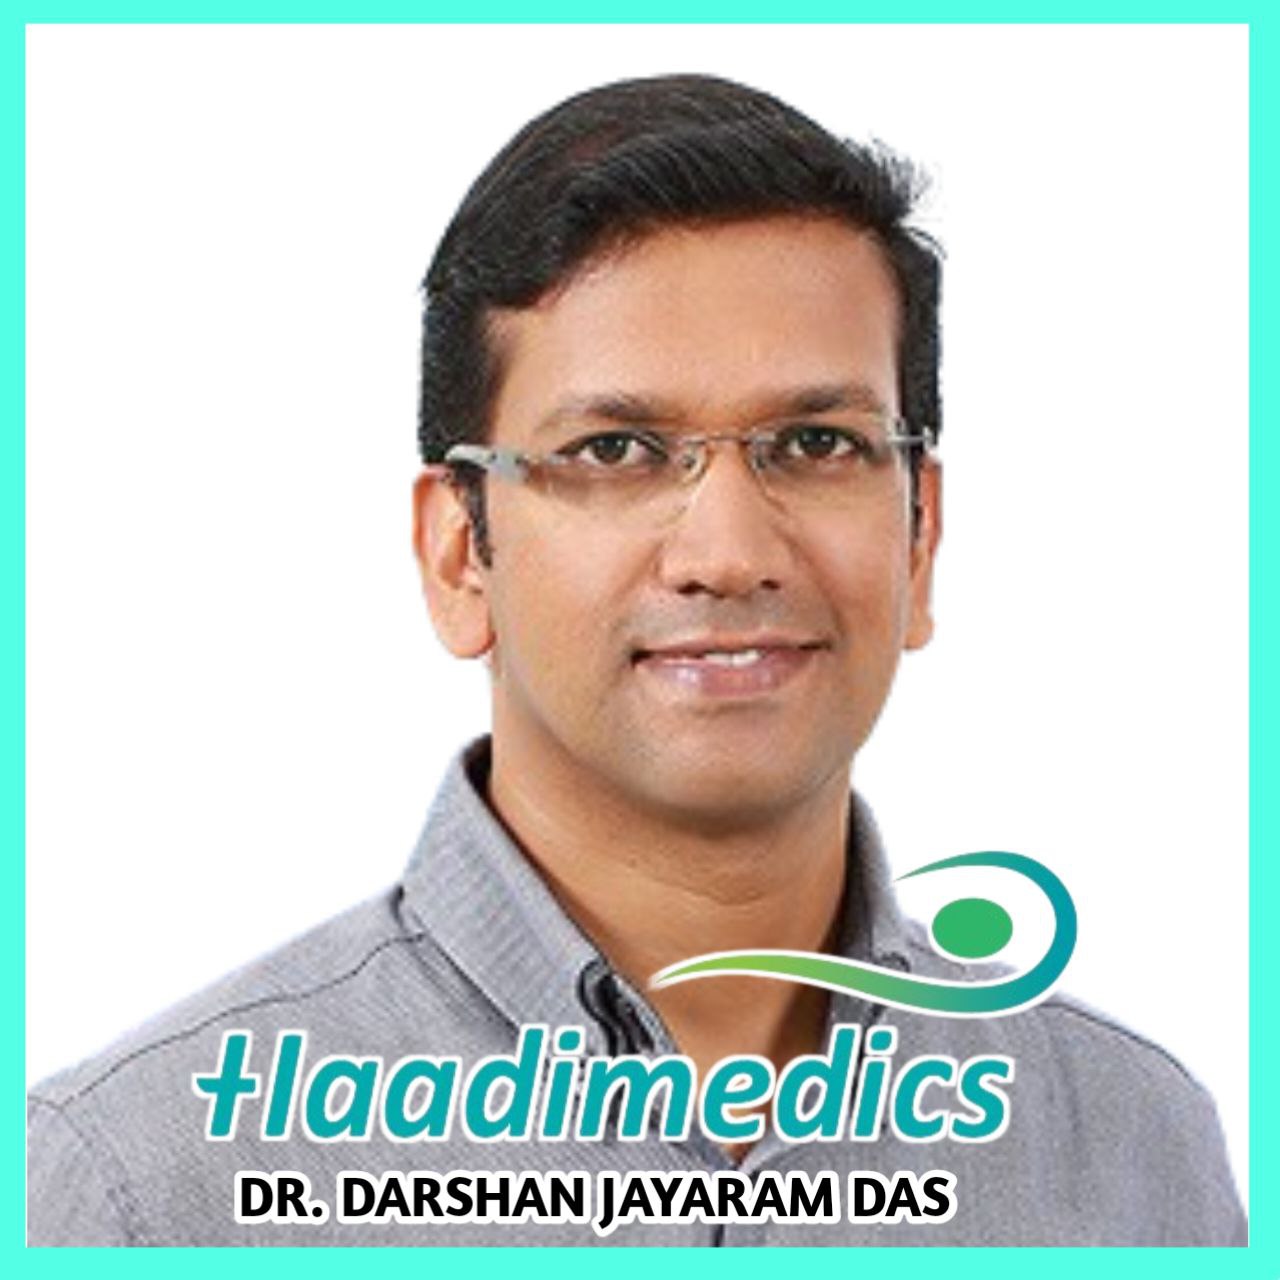 Dr. Darshan Jayaram Das  